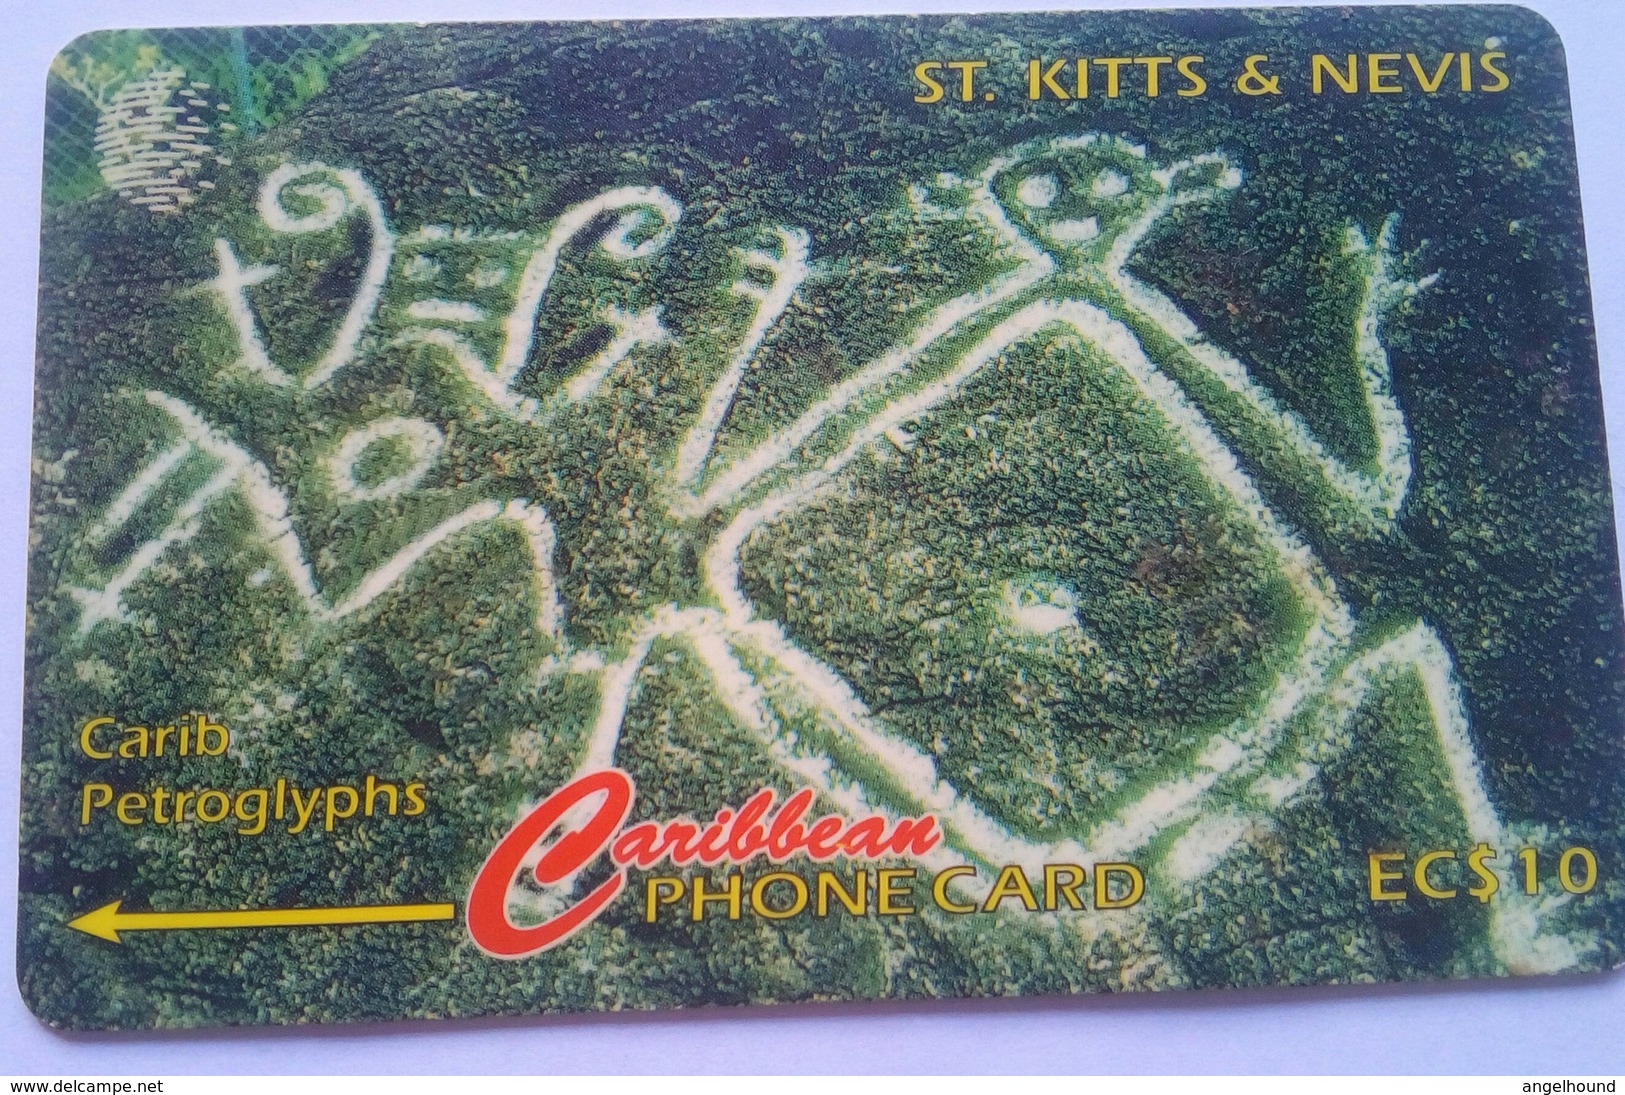 166CSKA Carib Petroglyphs EC$10 - St. Kitts & Nevis